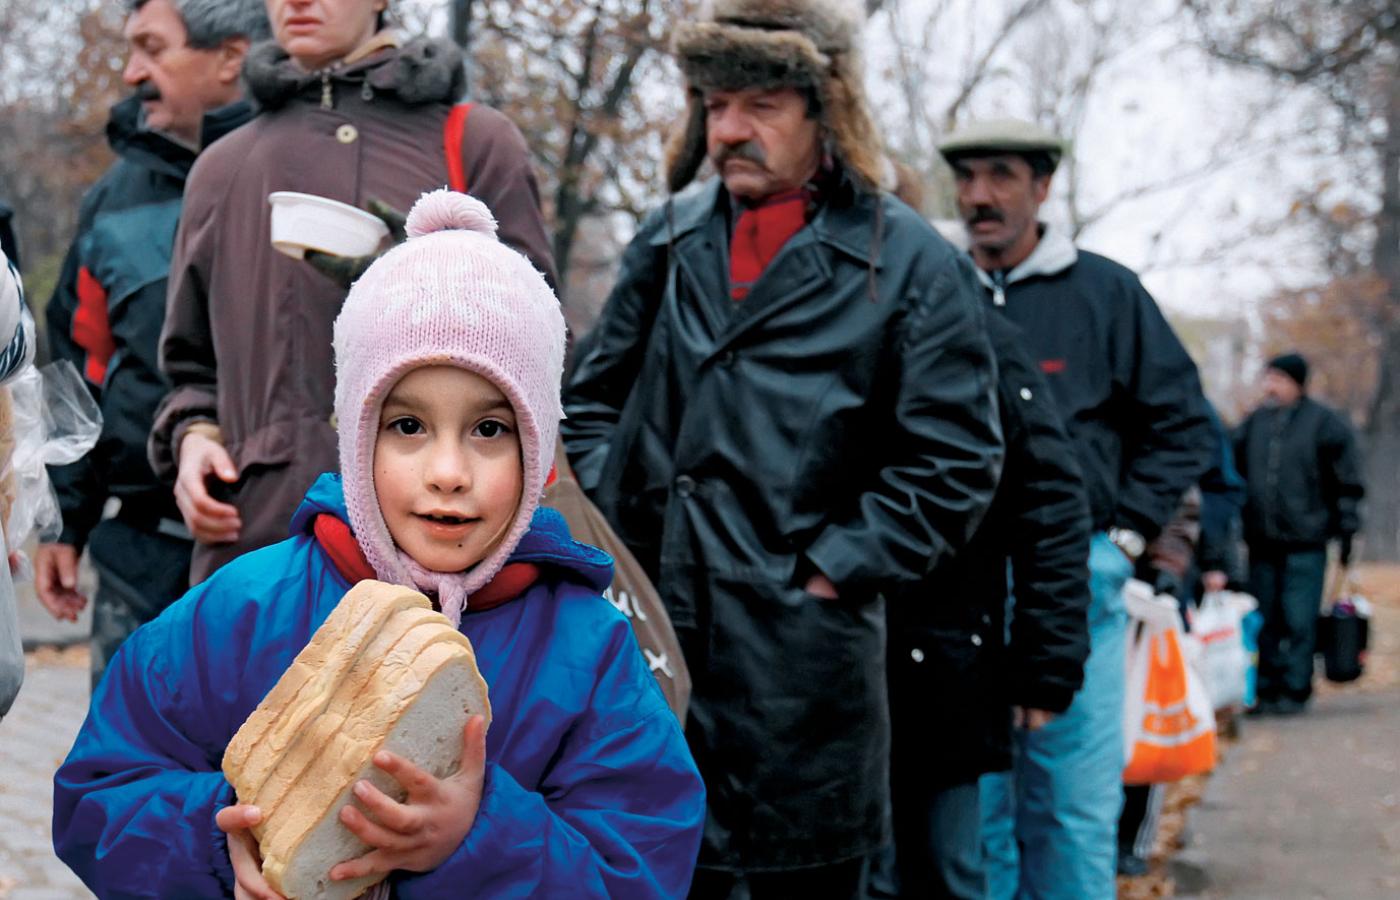 Budapeszt, 22 listopada 2011 r. Ludzie w kolejce po darmowe posiłki. Dotychczas nie kojarzyliśmy Węgier z takimi widokami.